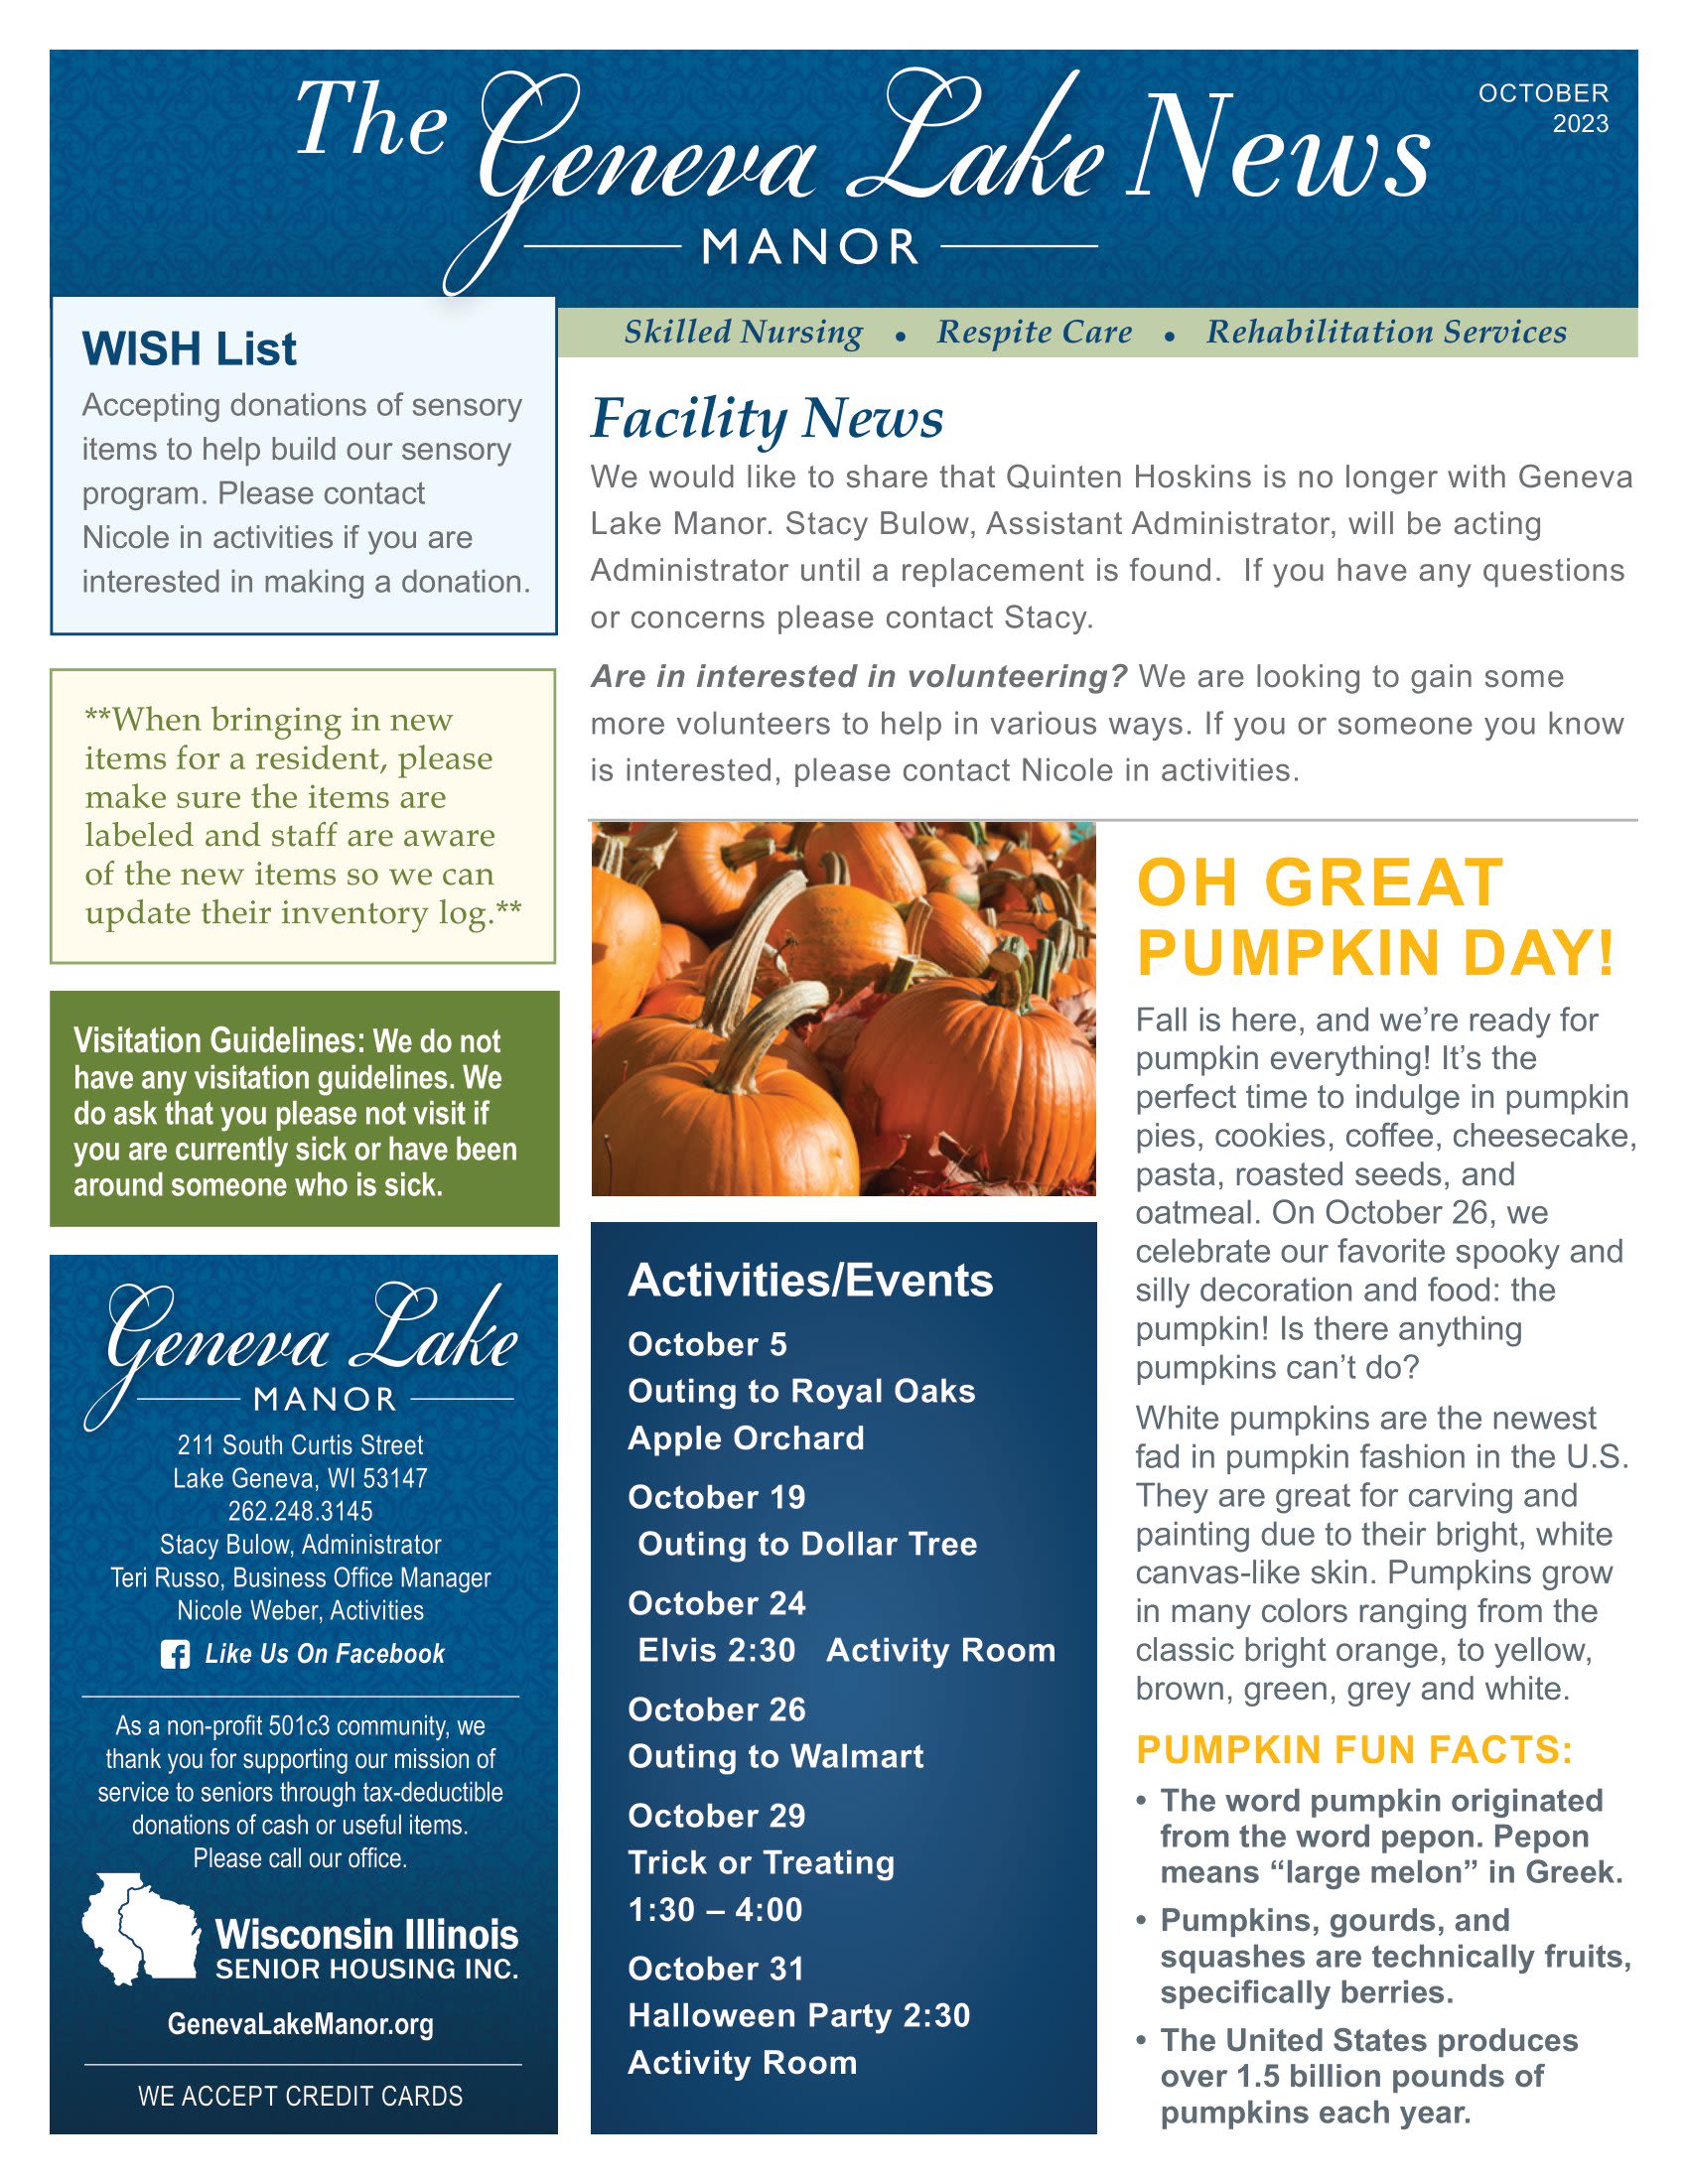 October 2023 Newsletter at Geneva Lake Manor in Lake Geneva, Wisconsin